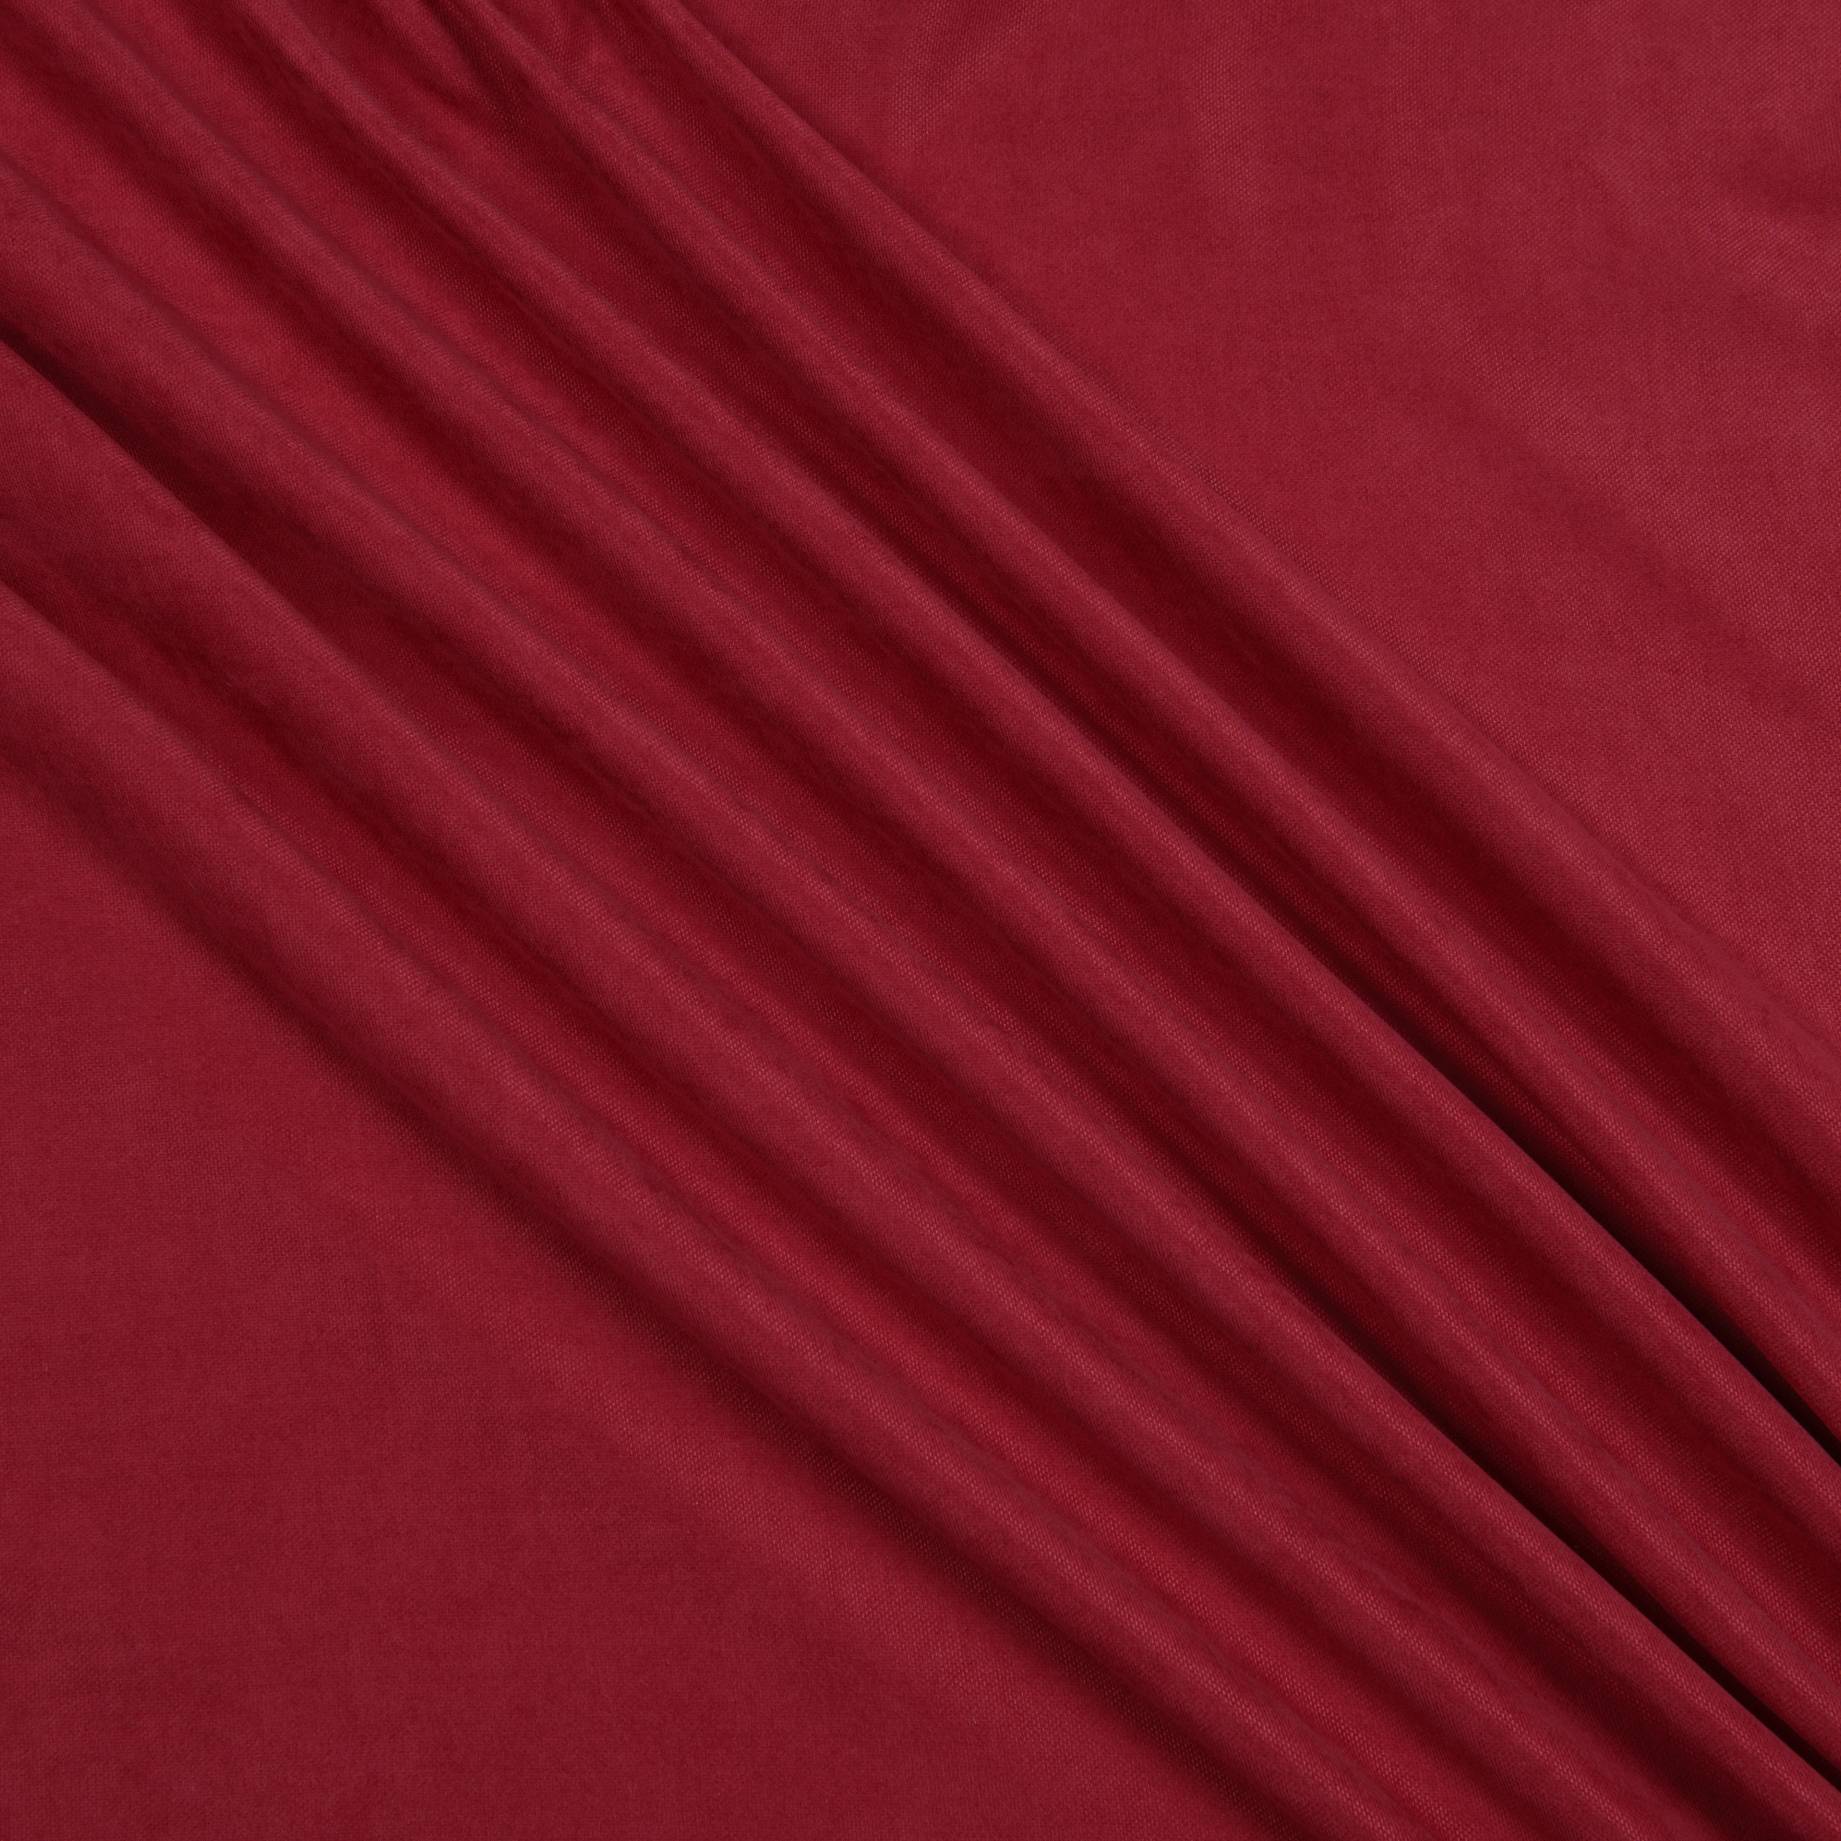 Декоративный нубук, Арвин 2, Канвас Даймонд, красный, полиэстер 100%, 193 г/м2, 50х35 см